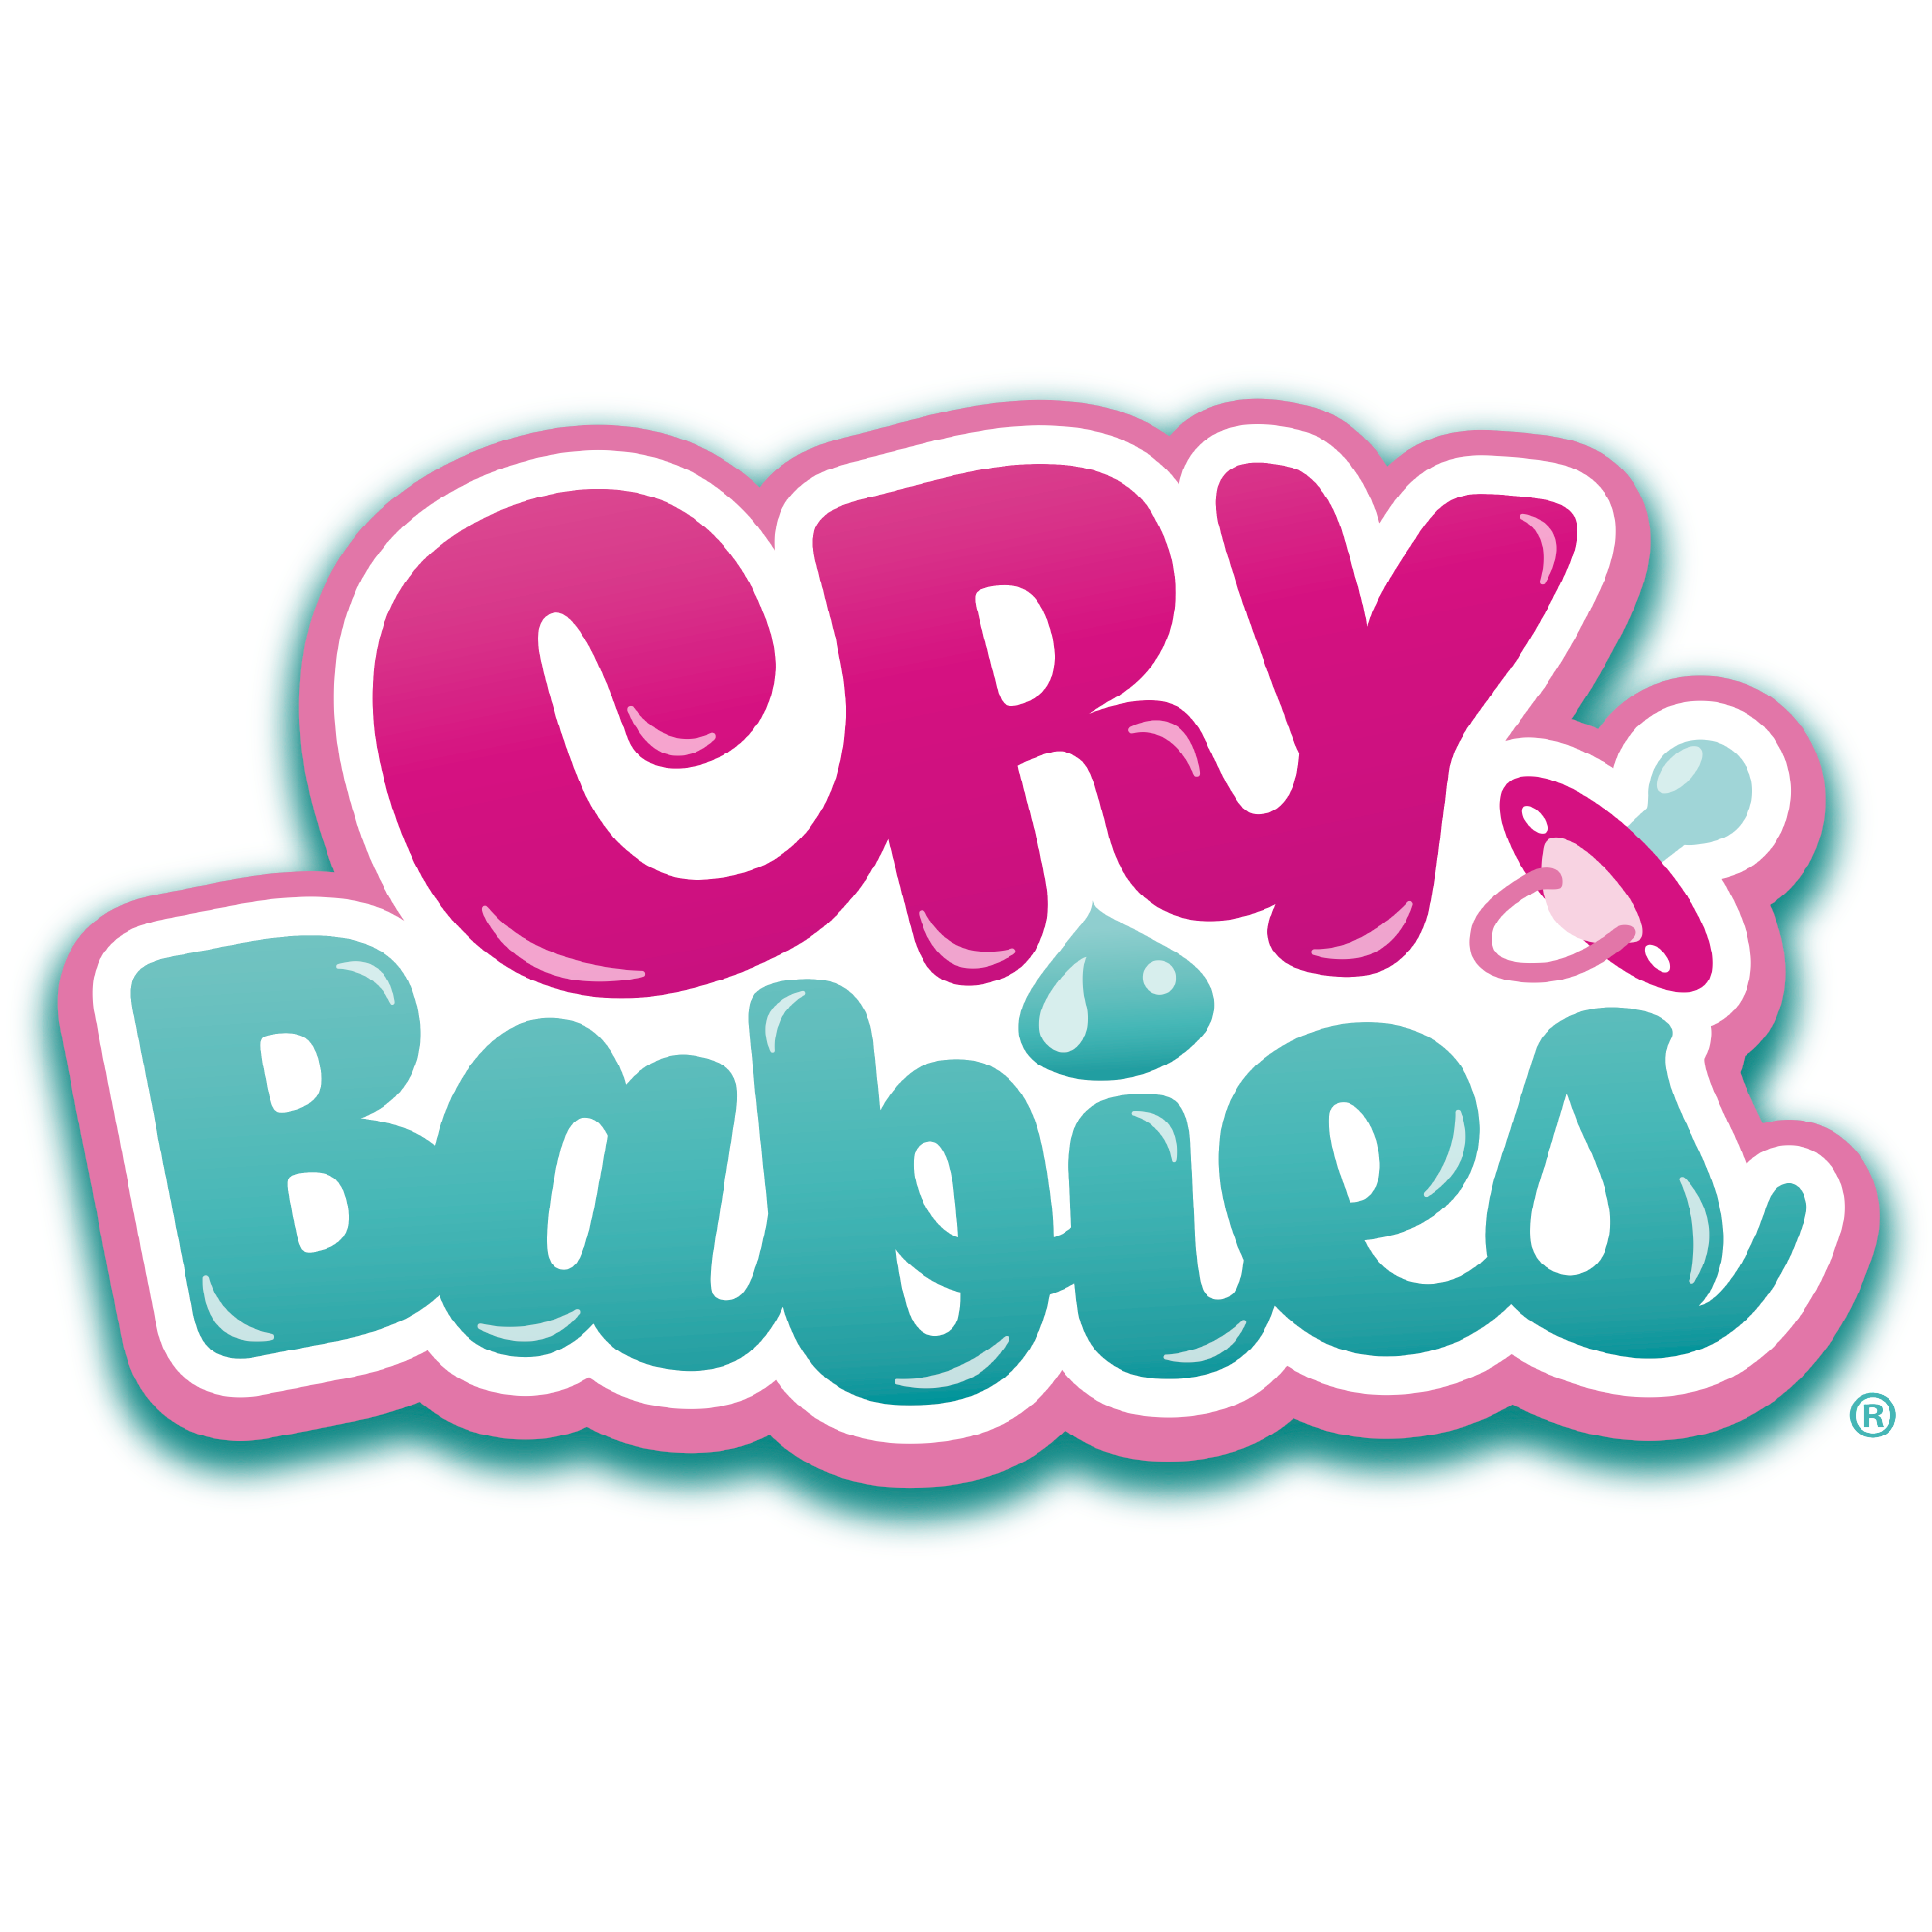 Crybabies